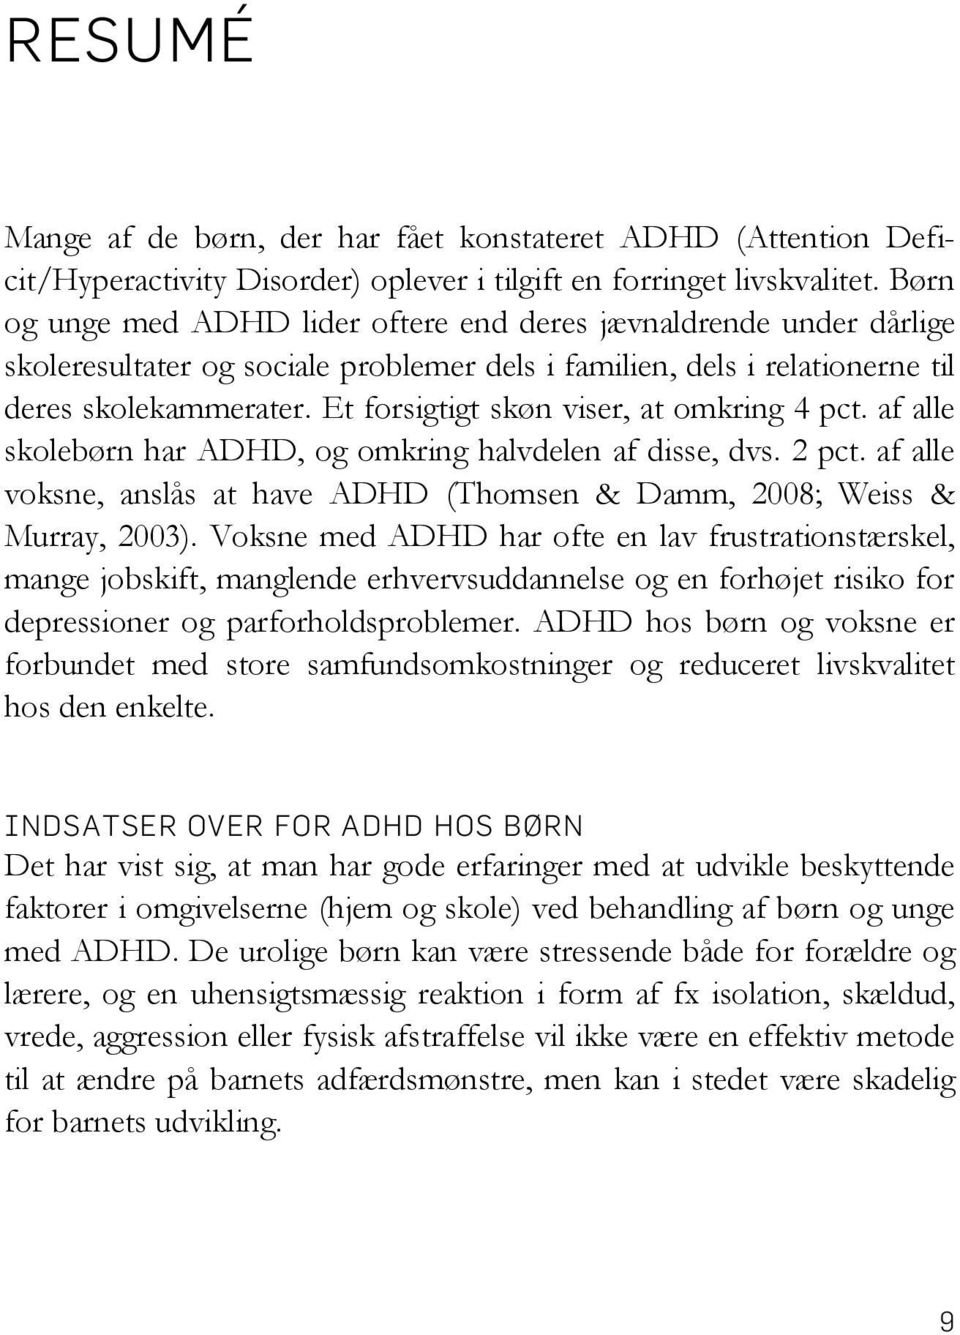 Et forsigtigt skøn viser, at omkring 4 pct. af alle skolebørn har ADHD, og omkring halvdelen af disse, dvs. 2 pct. af alle voksne, anslås at have ADHD (Thomsen & Damm, 2008; Weiss & Murray, 2003).